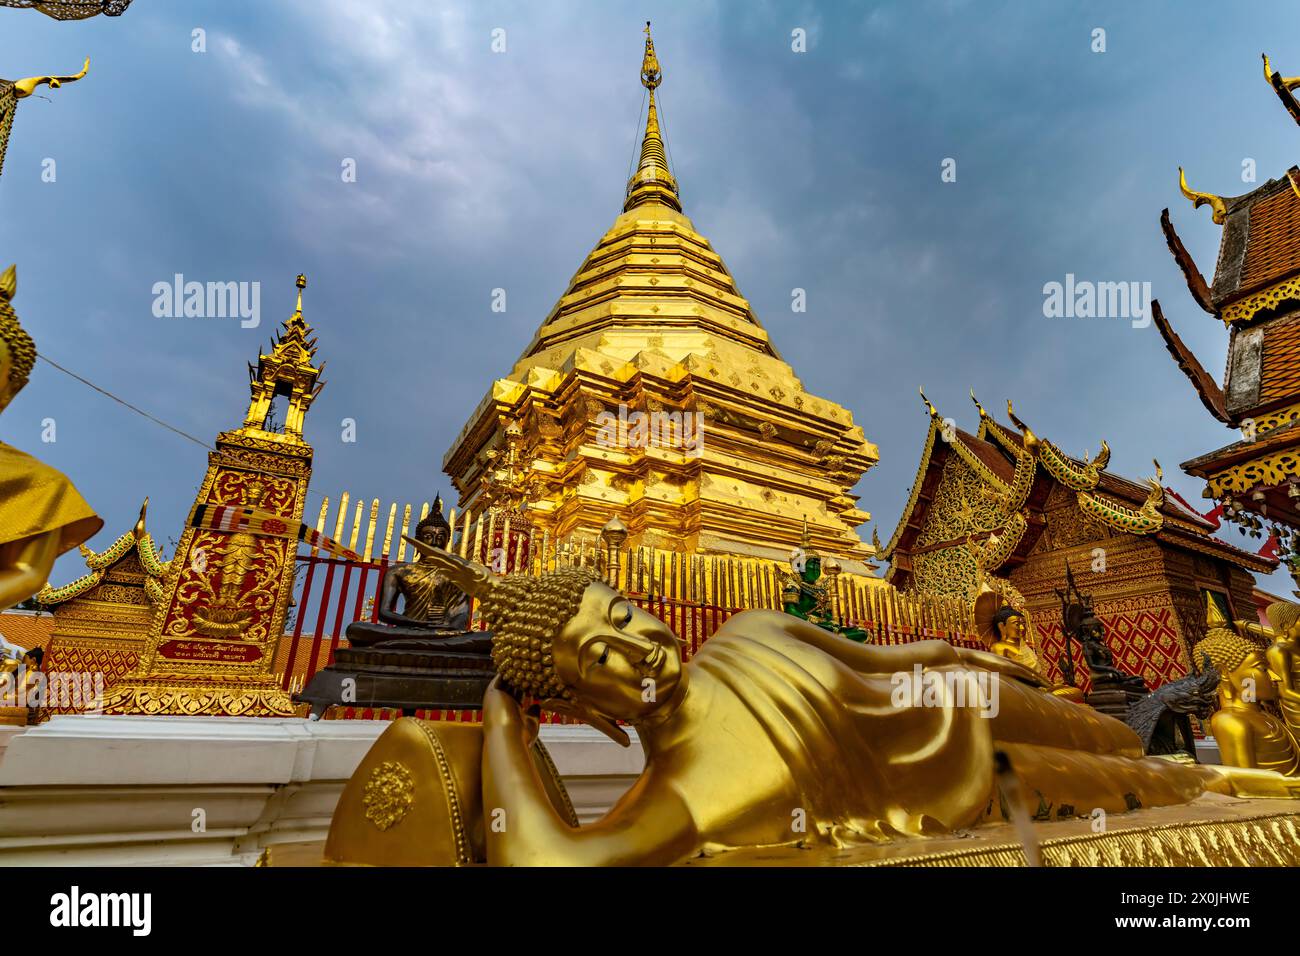 Buddha sdraiato e Chedi dorato del complesso templare buddista Wat Phra That Doi Suthep, punto di riferimento di Chiang mai, Thailandia, Asia Foto Stock